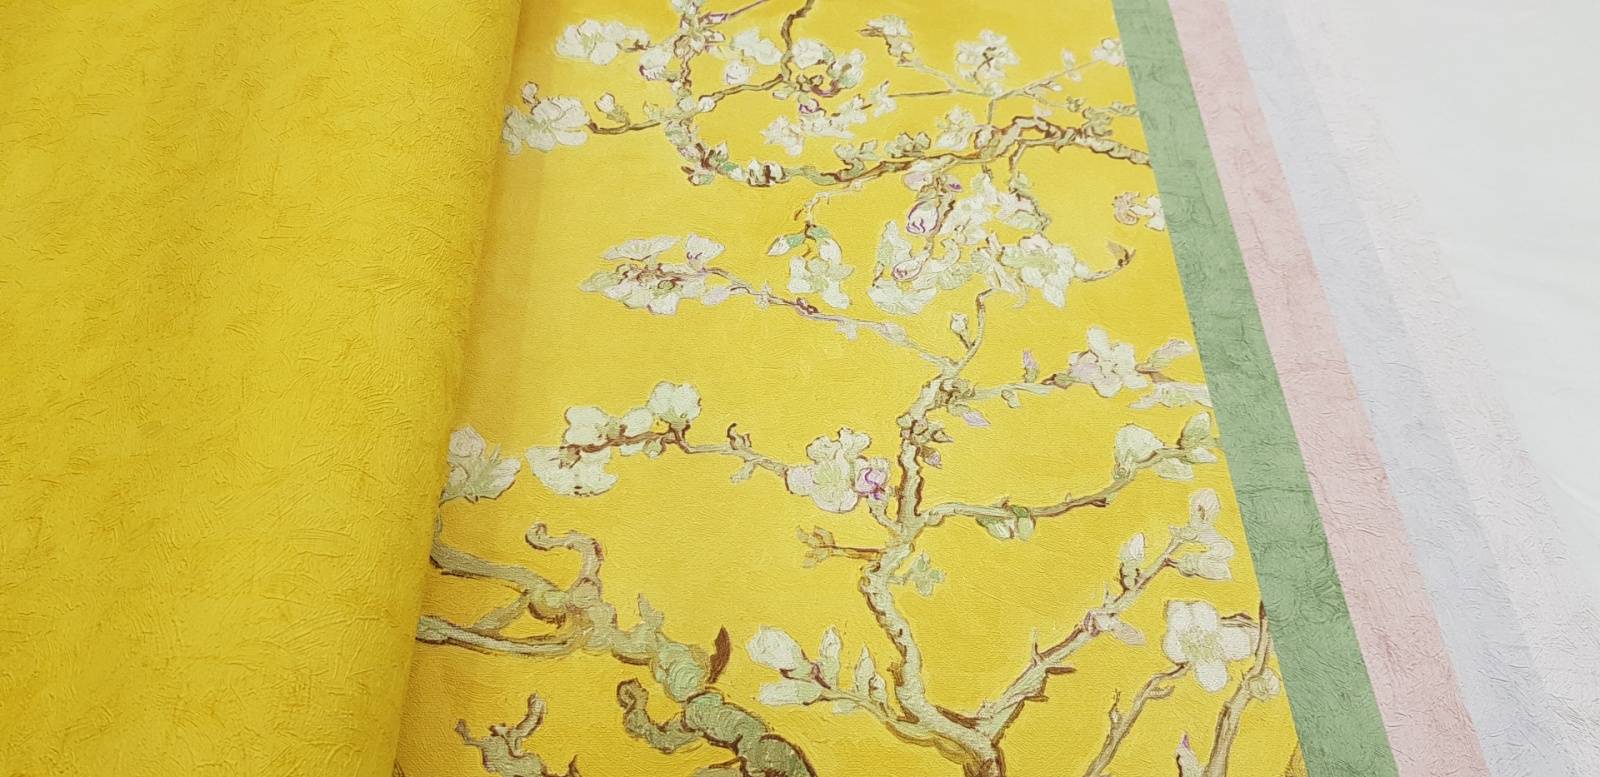 Обои «ван гог» (51 фото) — панно с цветущим миндалем и сакурой в интерьере, отзывы о коллекции для стен